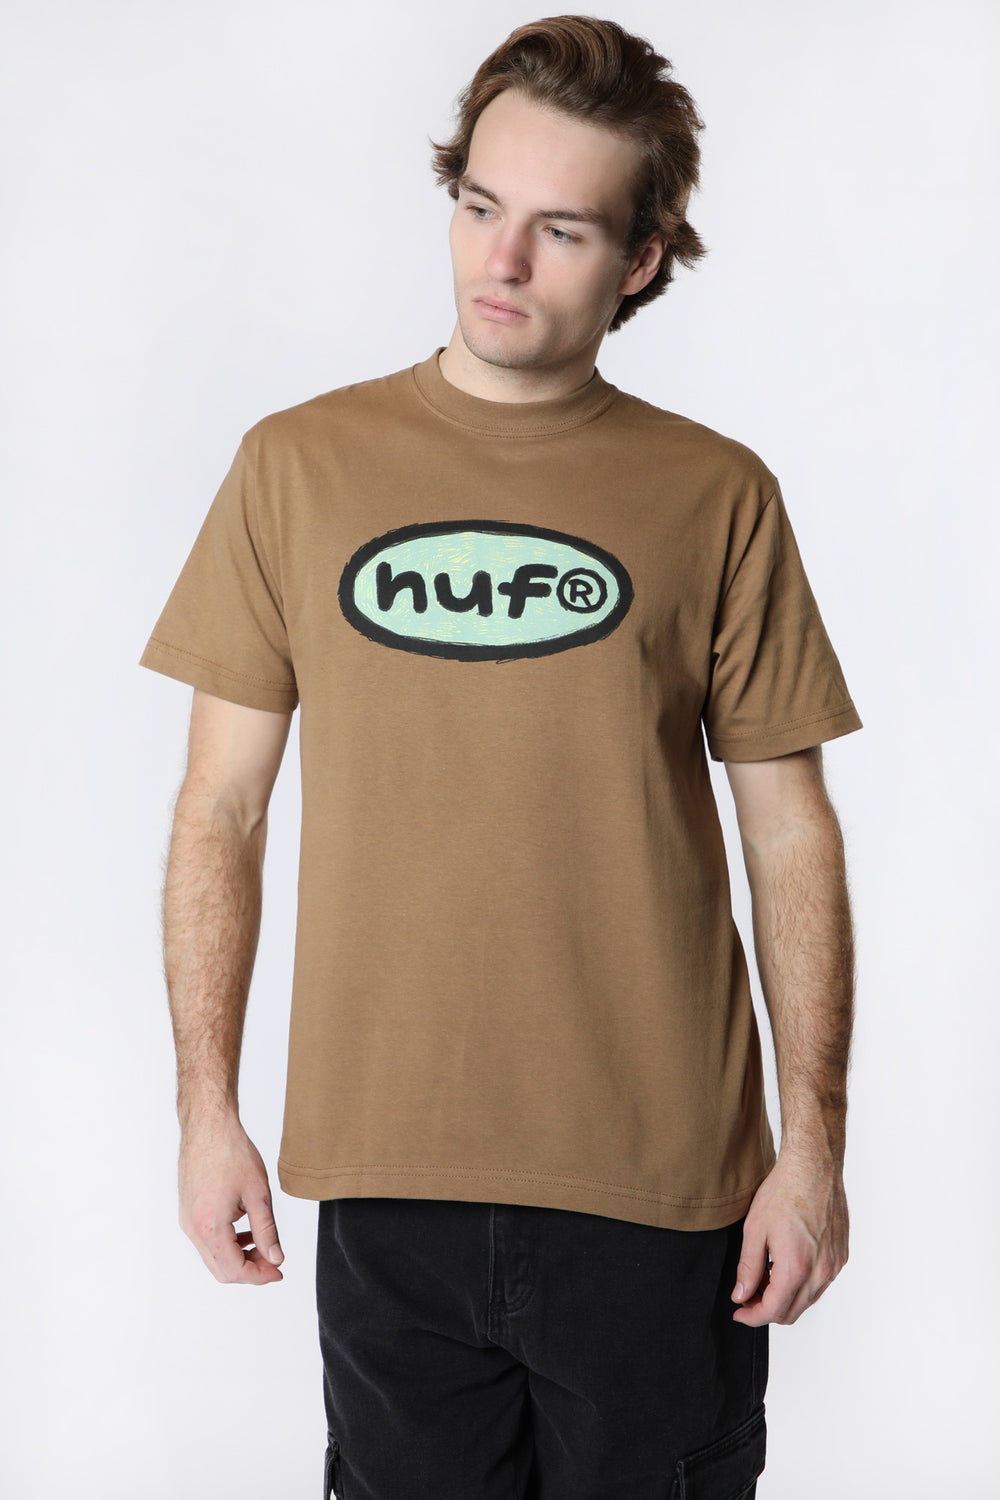 HUF Penciled In T-Shirt HUF Penciled In T-Shirt